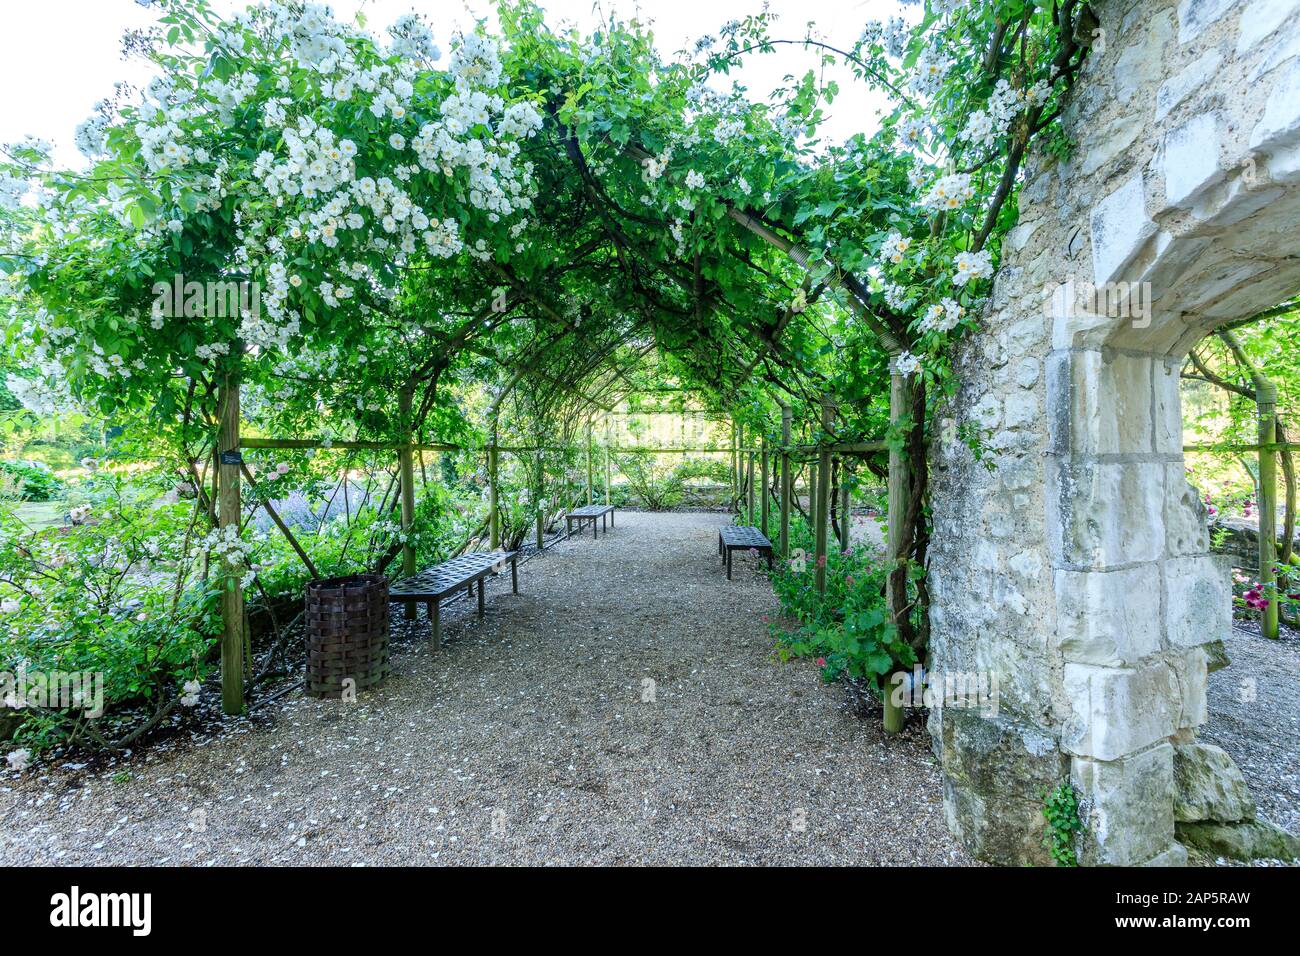 France, Indre et Loire, Loire Anjou Touraine Parc Naturel Régional, le Château du Rivau Lemere, jardins, cour intérieure du château, pergola couverte de roses 'Ch Banque D'Images